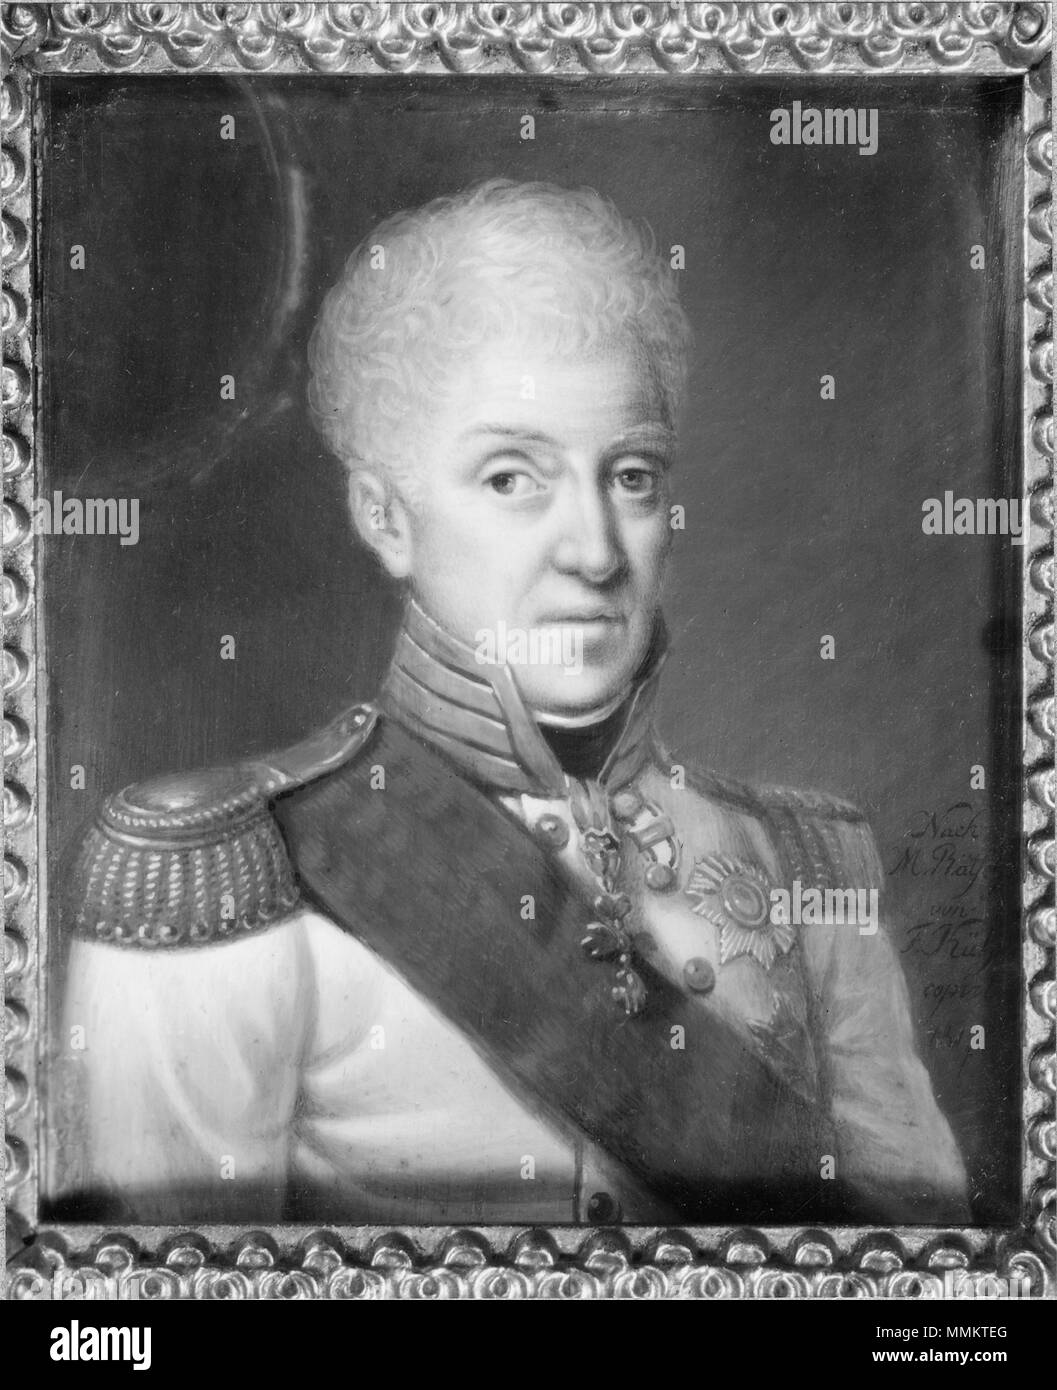 Grh2565sv 51 Anton I, 1755-1836, kung av Sachsen, pendang till NMDs 1889 (Friedrich Anton Joseph Kühne) - Nationalmuseum - 28748 Stock Photo